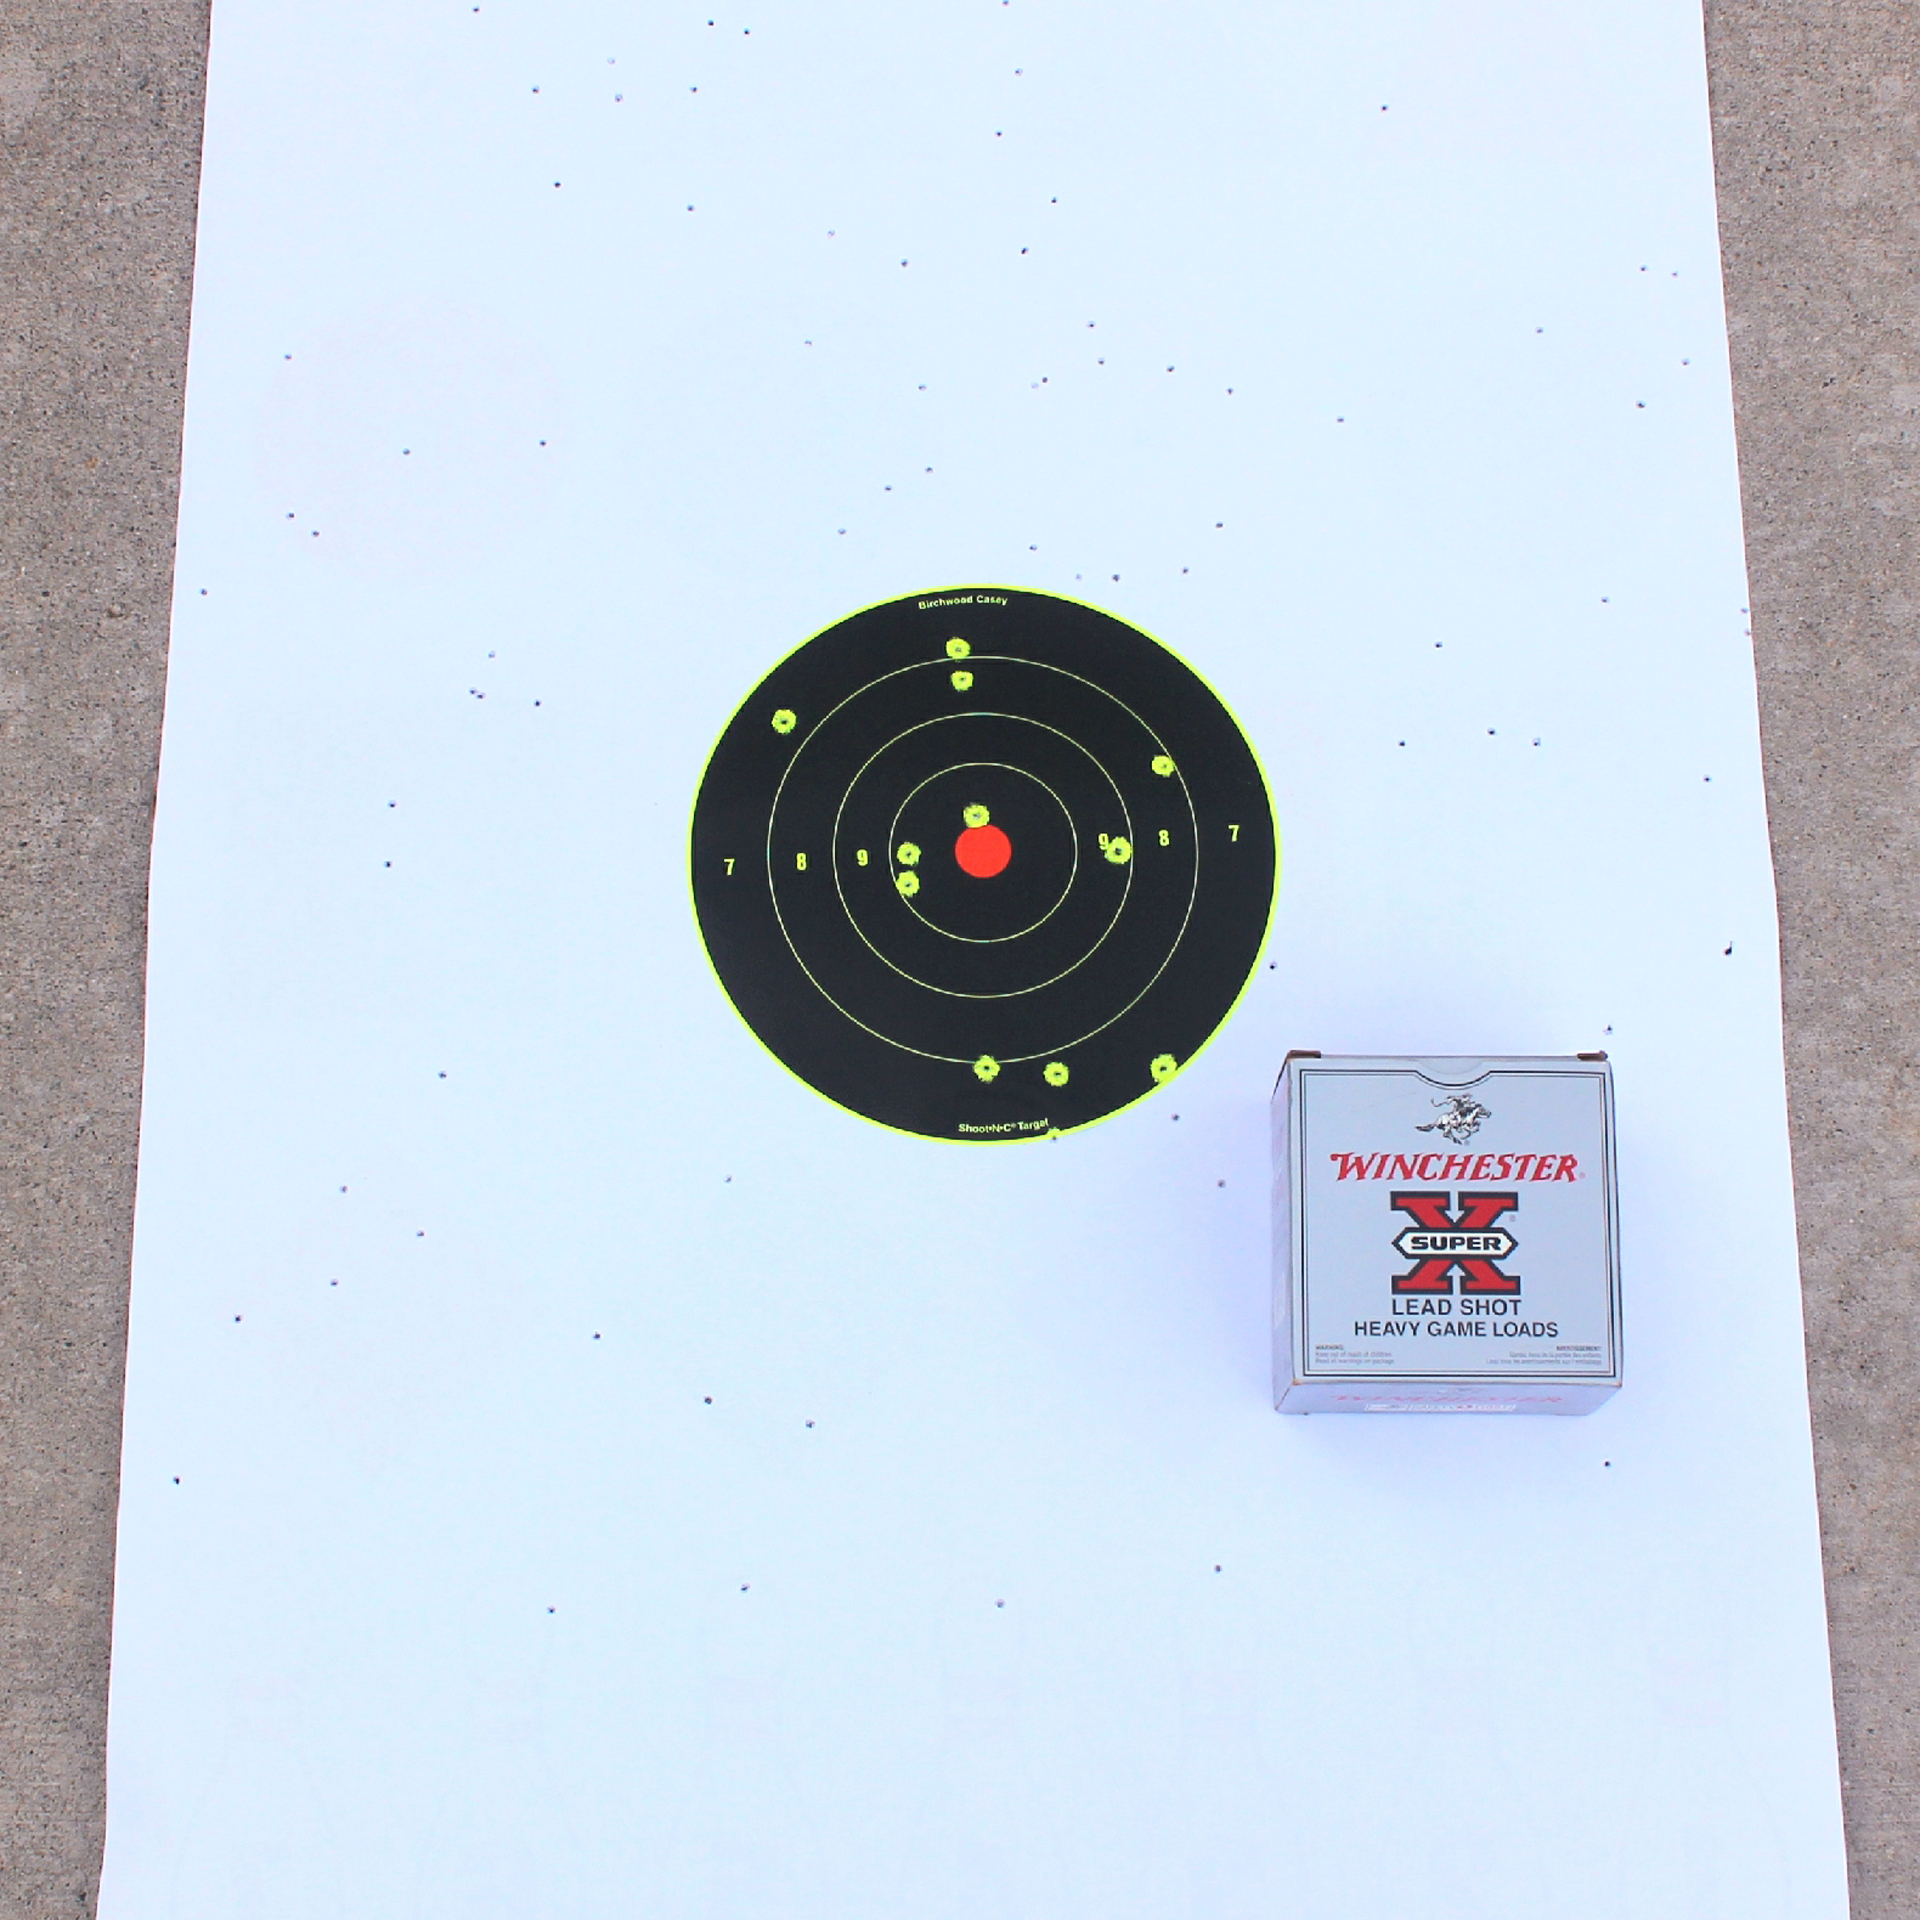 Heritage Badlander ammunition testing white target with black bullseye and ammunition box